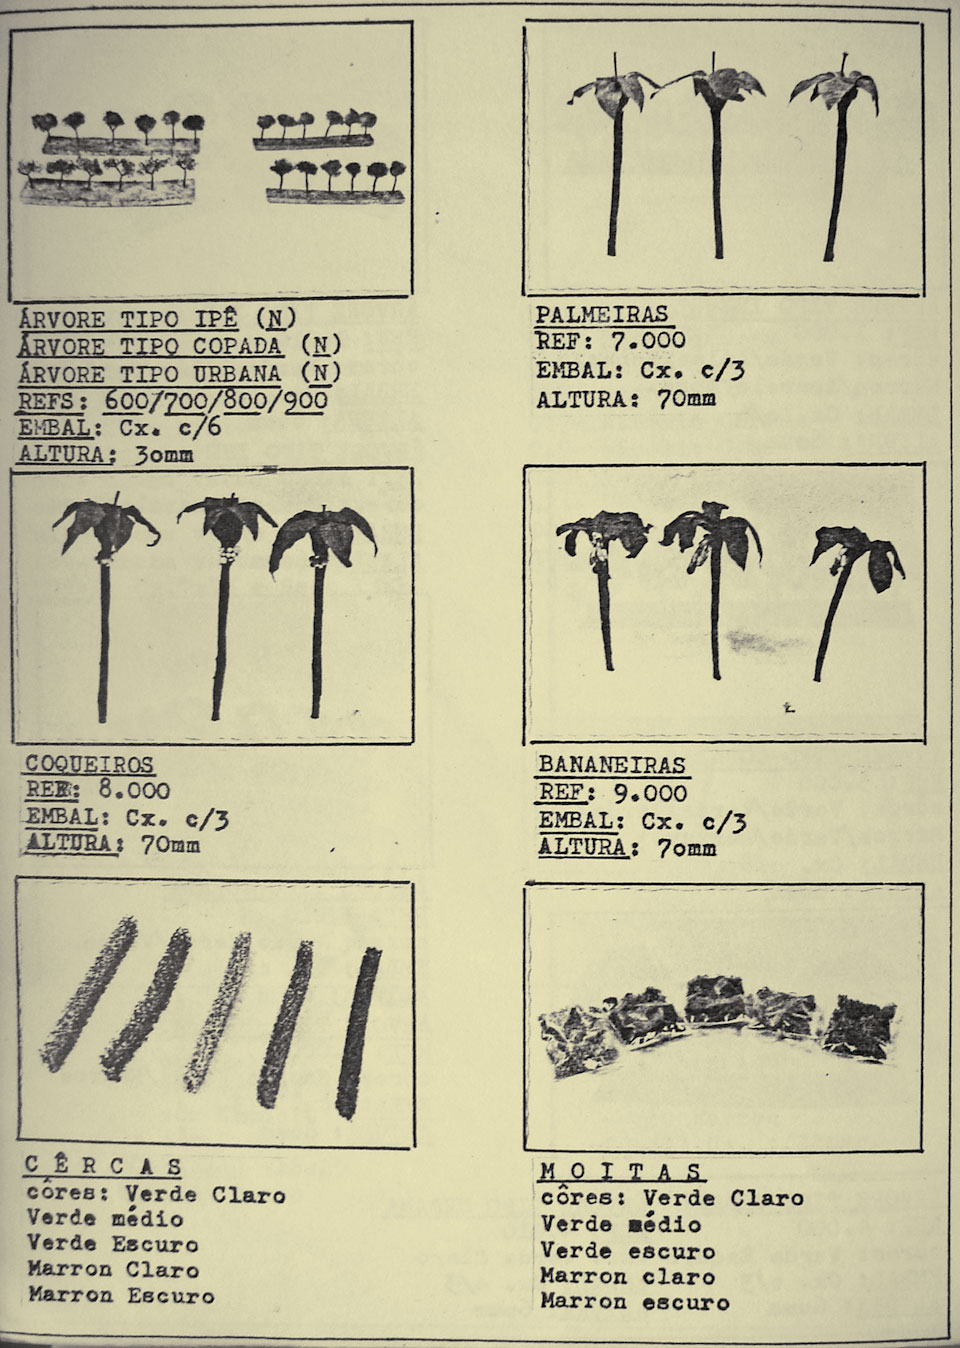 Página 10,  com o mostruário de pequenas árvores, coqueiros, bananeiras, moitas e cercas vivas decorativos para maquetes de ferreomodelismo